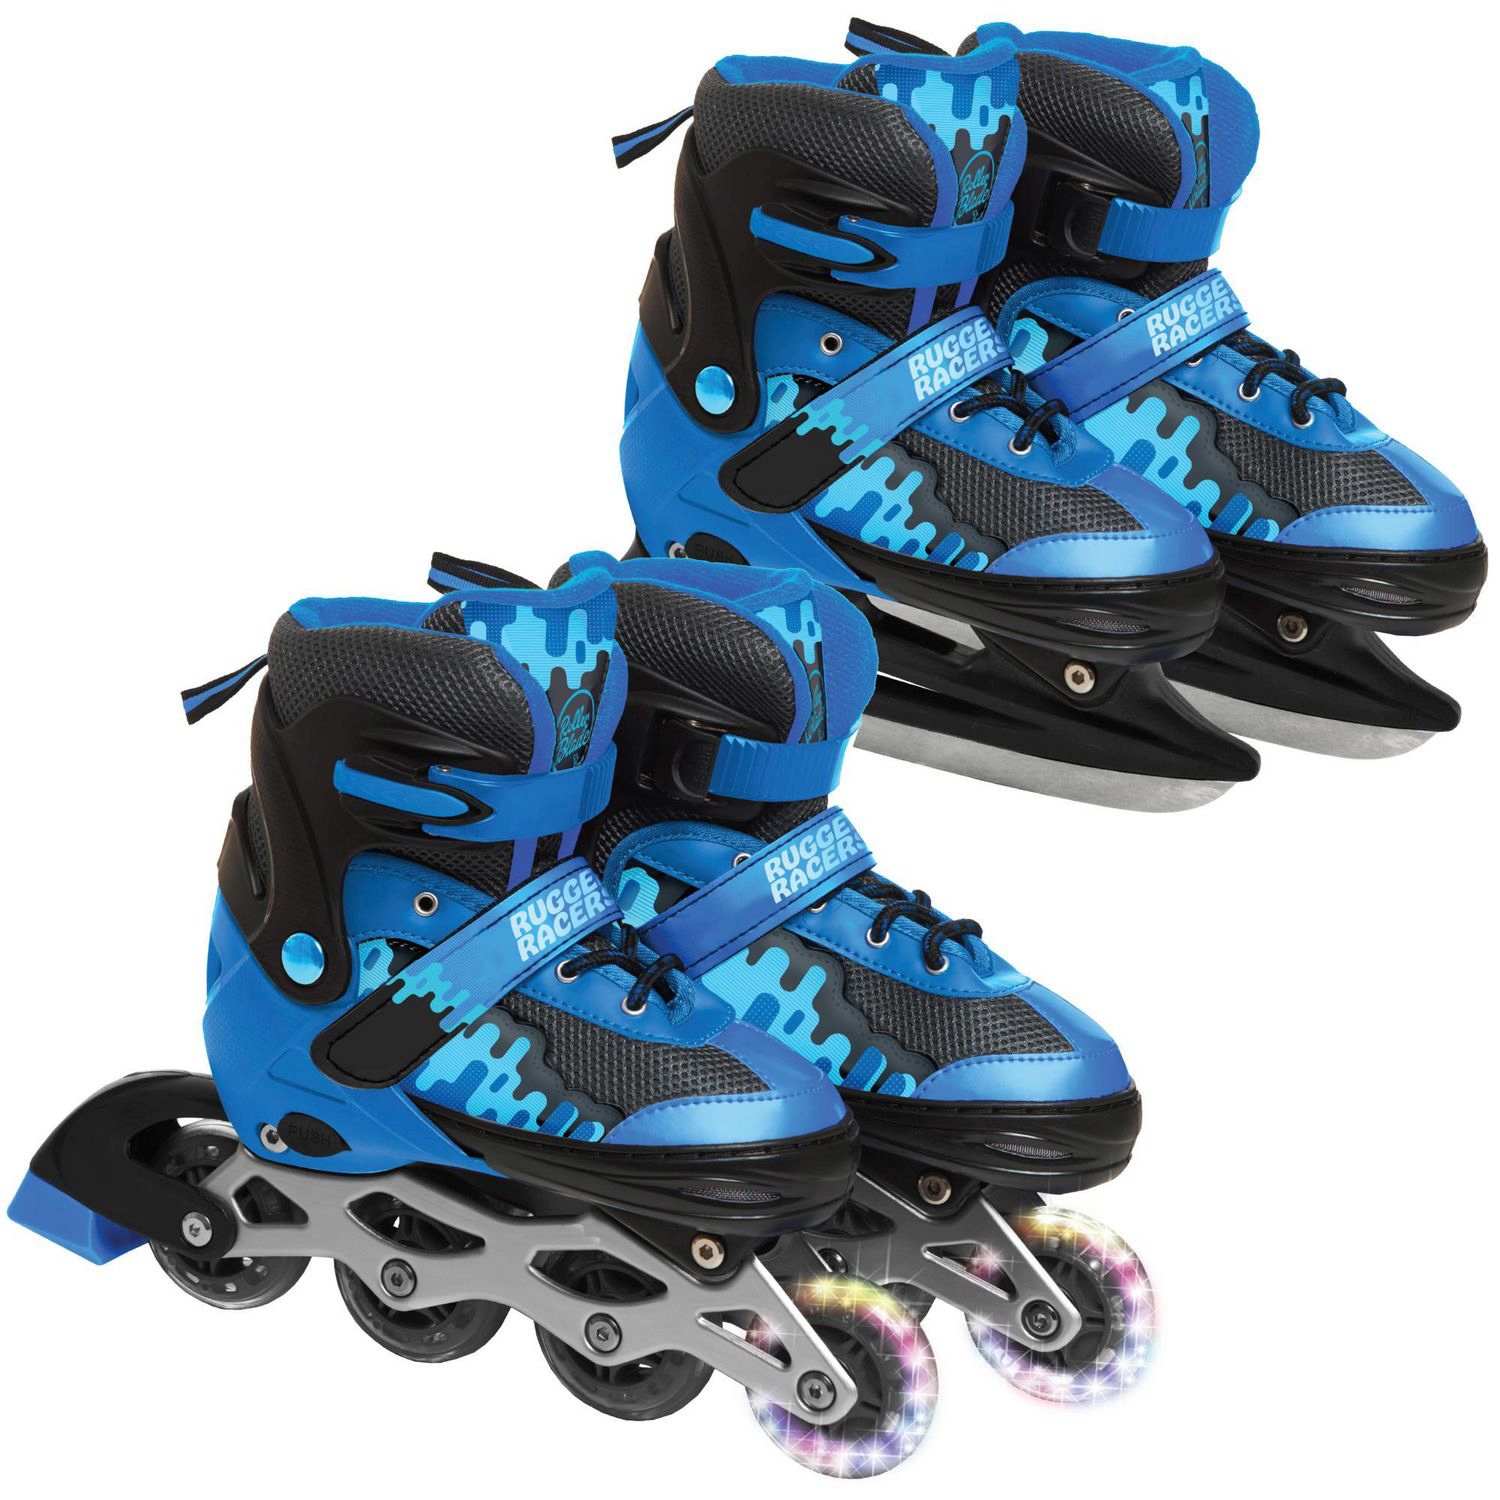 Rugged Racers Roller et patin à glace réglables et convertibles pour enfants - Moyen